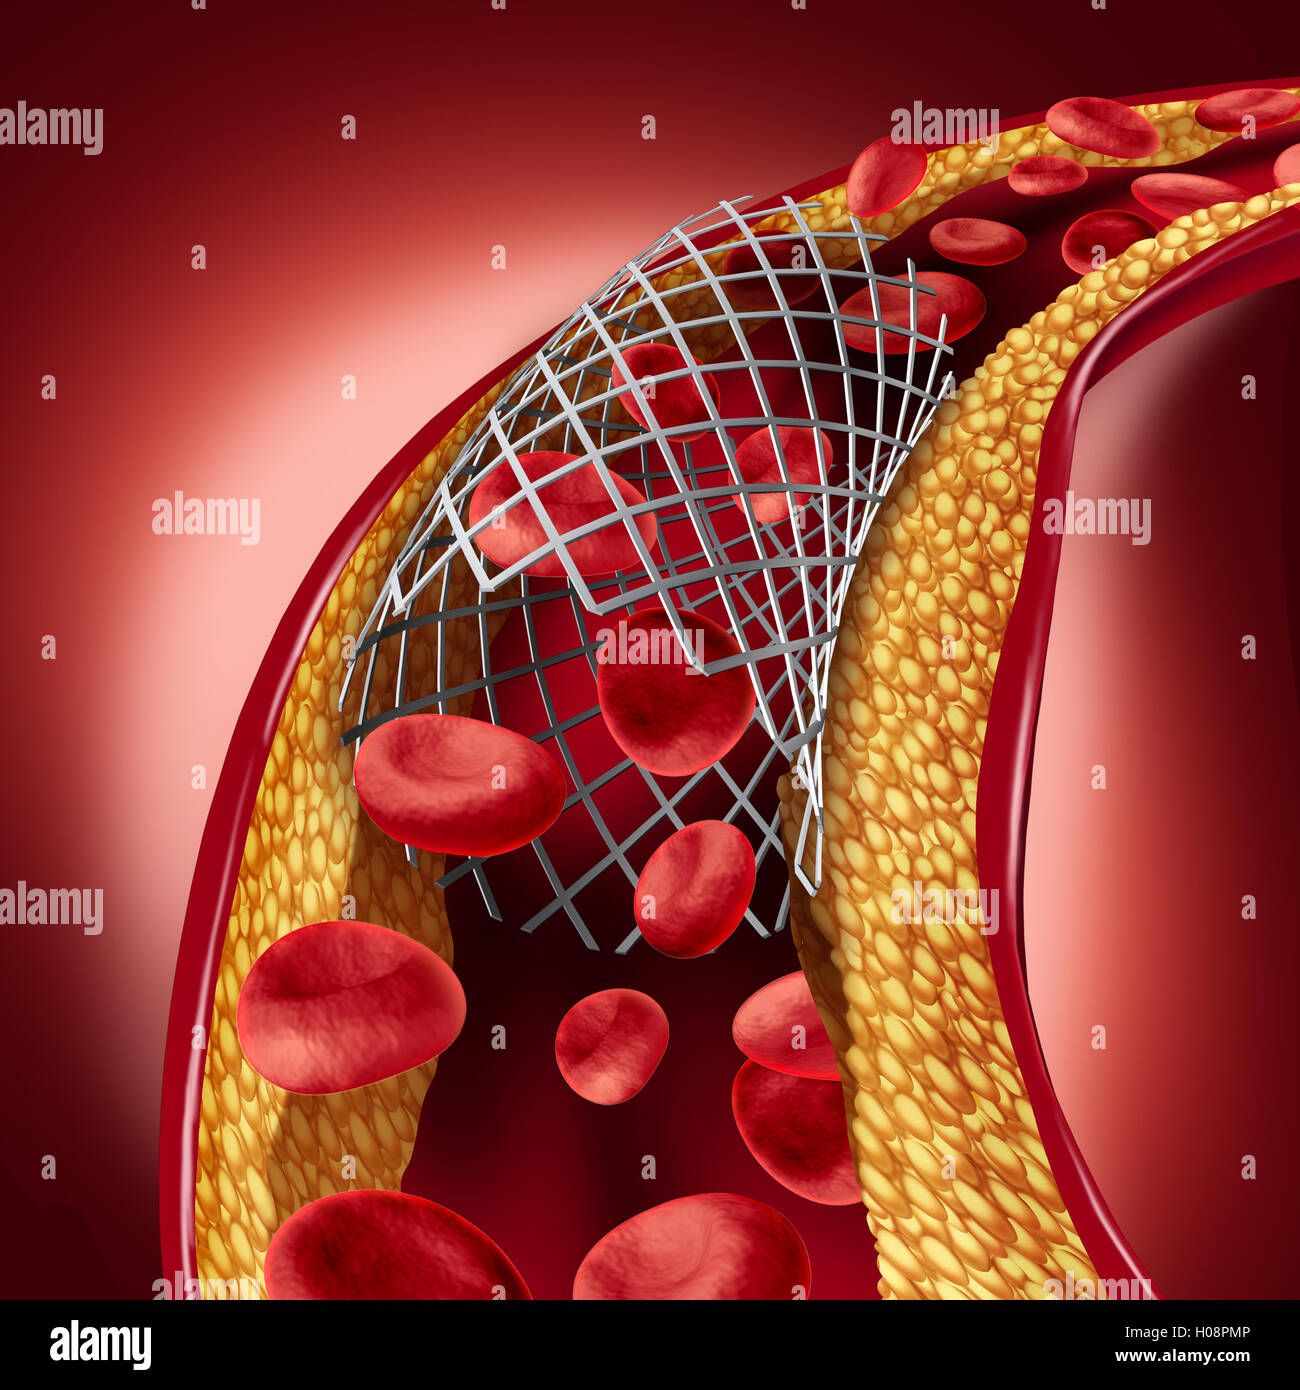 Stent Implantat Konzept als Herz-Kreislauferkrankungen Behandlung Symbol mit einer Angioplastie-Prozedur in einer Arterie, die Cholesterin Plaque Blockade für erhöhte Durchblutung als 3D Darstellung geöffnet hat. Stockfoto